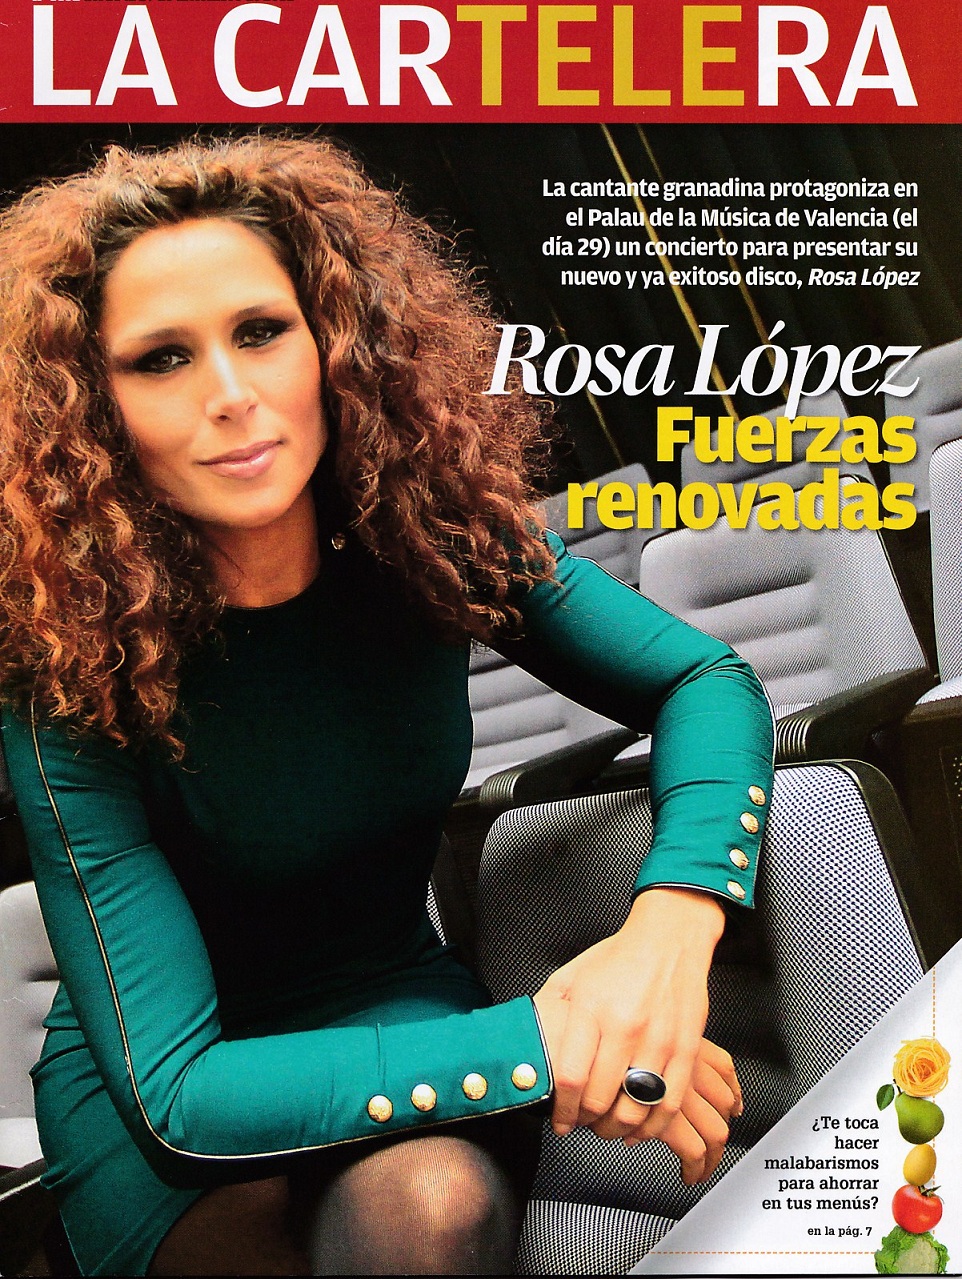 Miles De Estrellas Fans De Rosa López Rosa López Fuerzas Renovadas La Cartelera 21 12 12